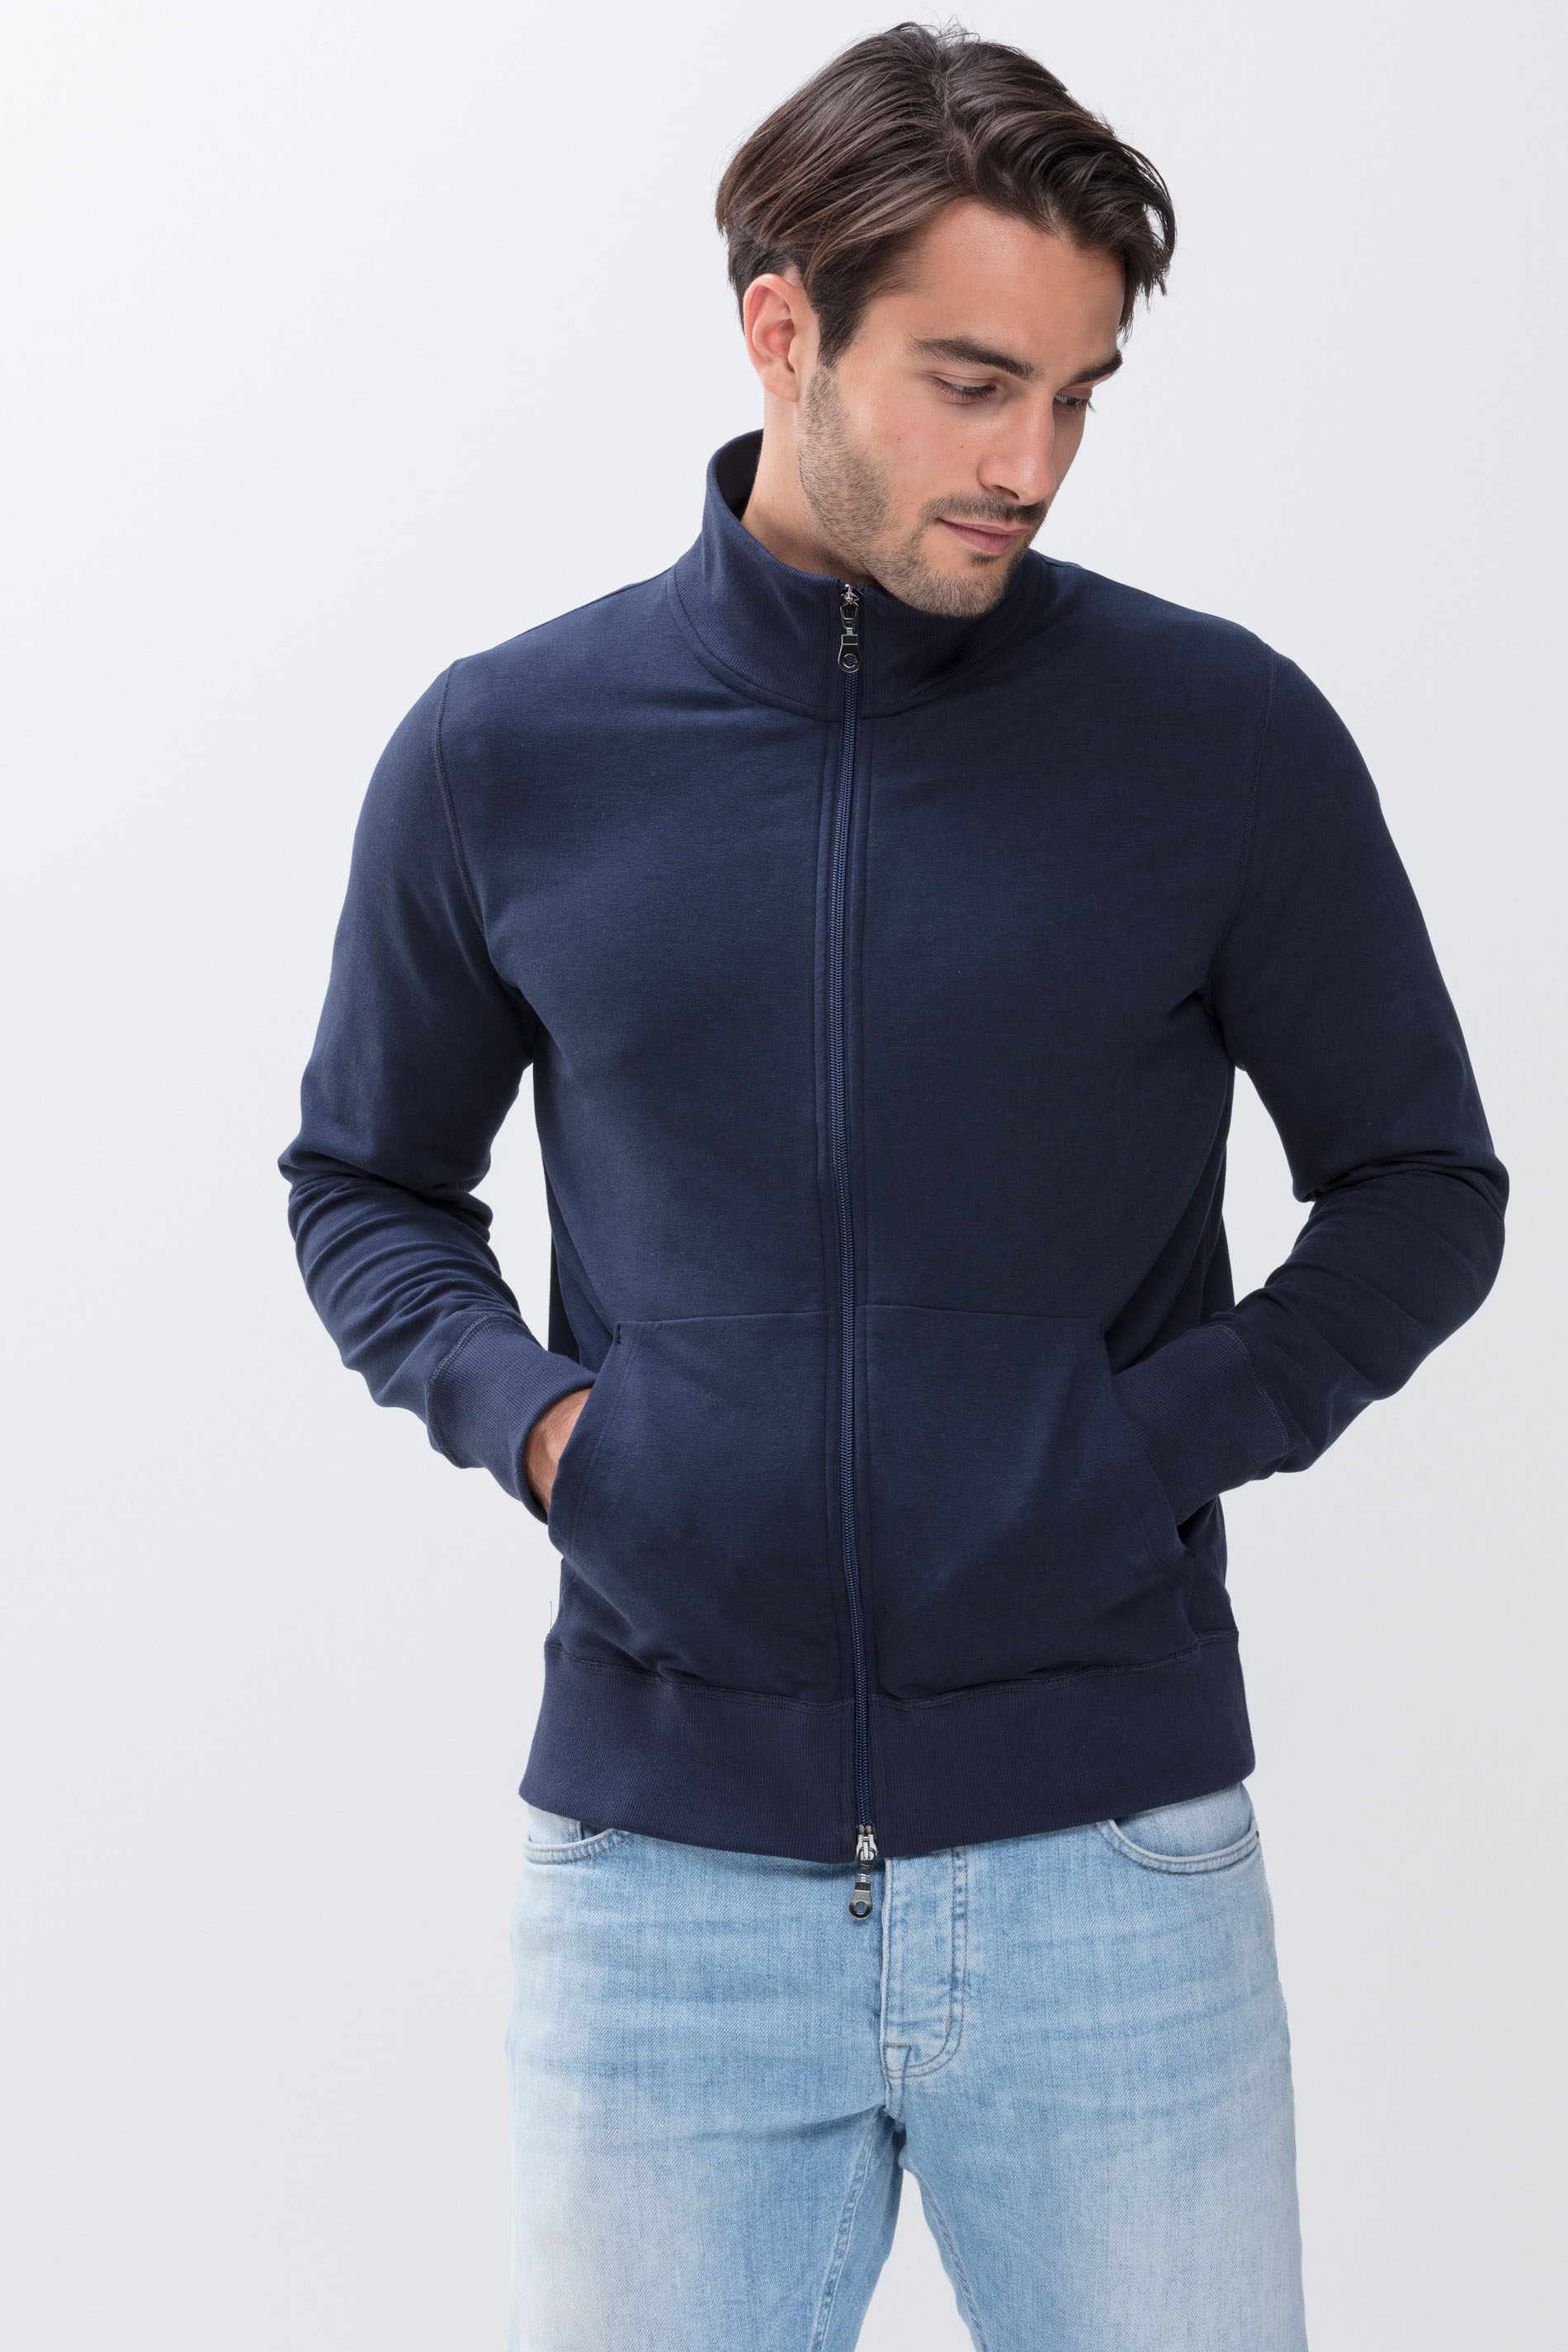 Men's sweat jacket with zip Yacht Blue Serie Enjoy Festlegen | mey®